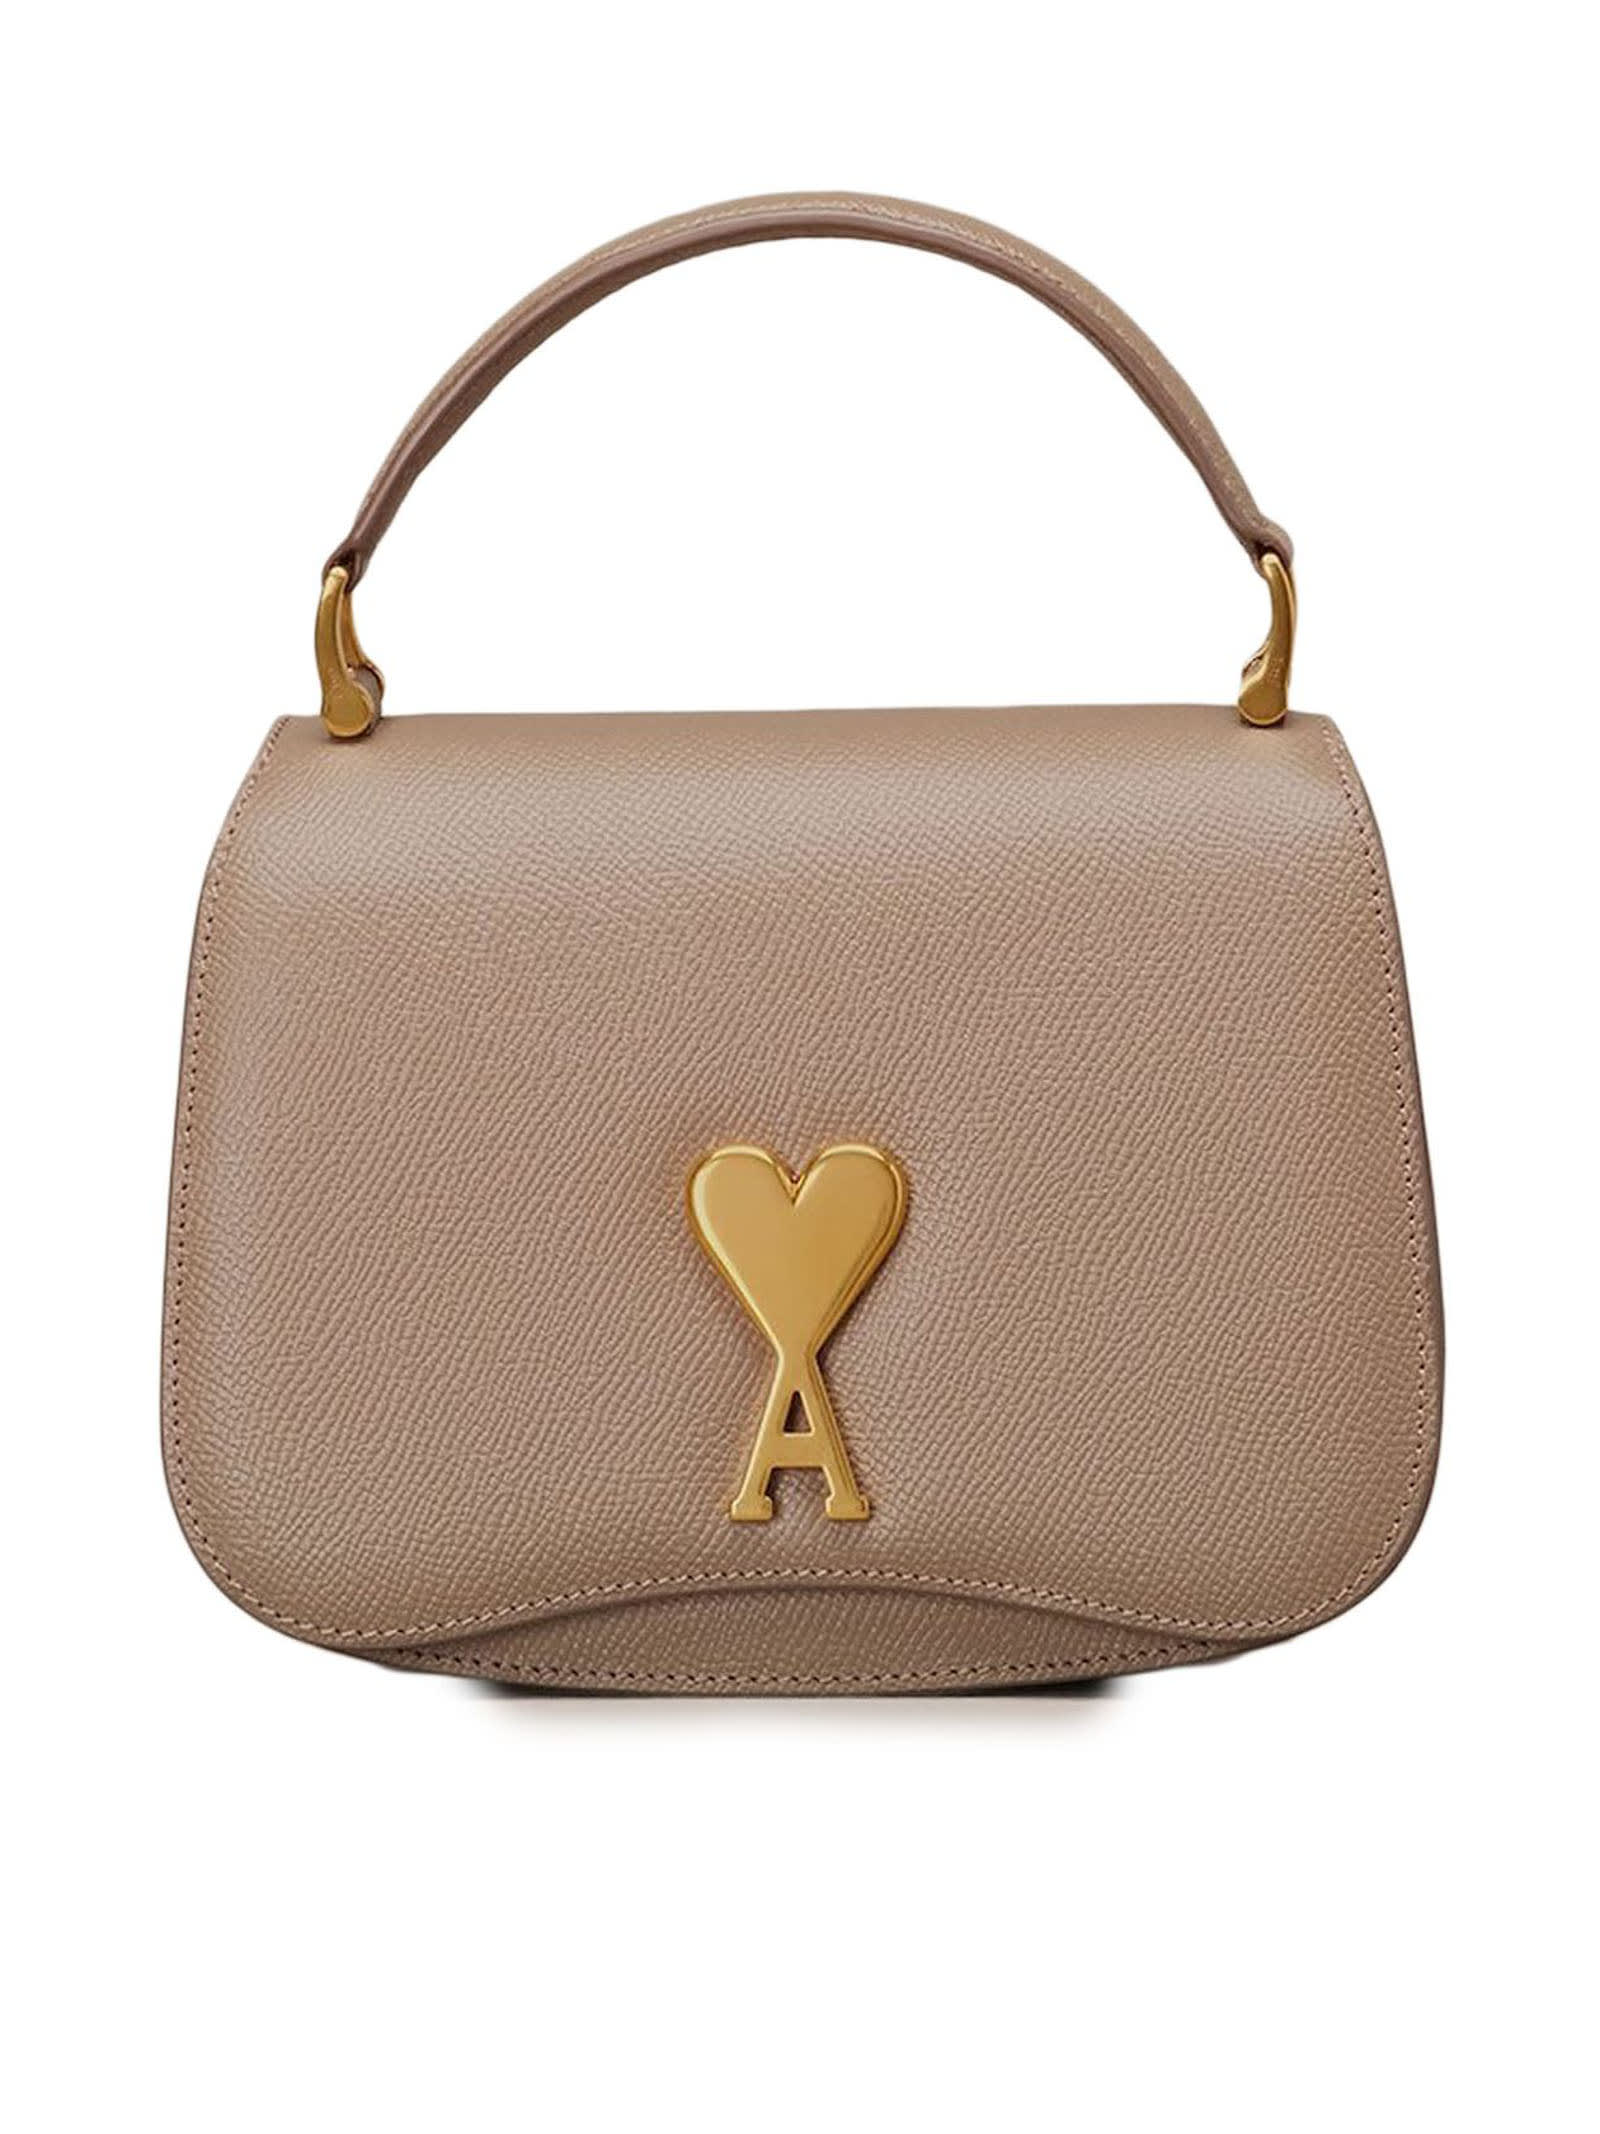 Ami Alexandre Mattiussi Mini Paris Paris Bag In Grained Leather In Brown